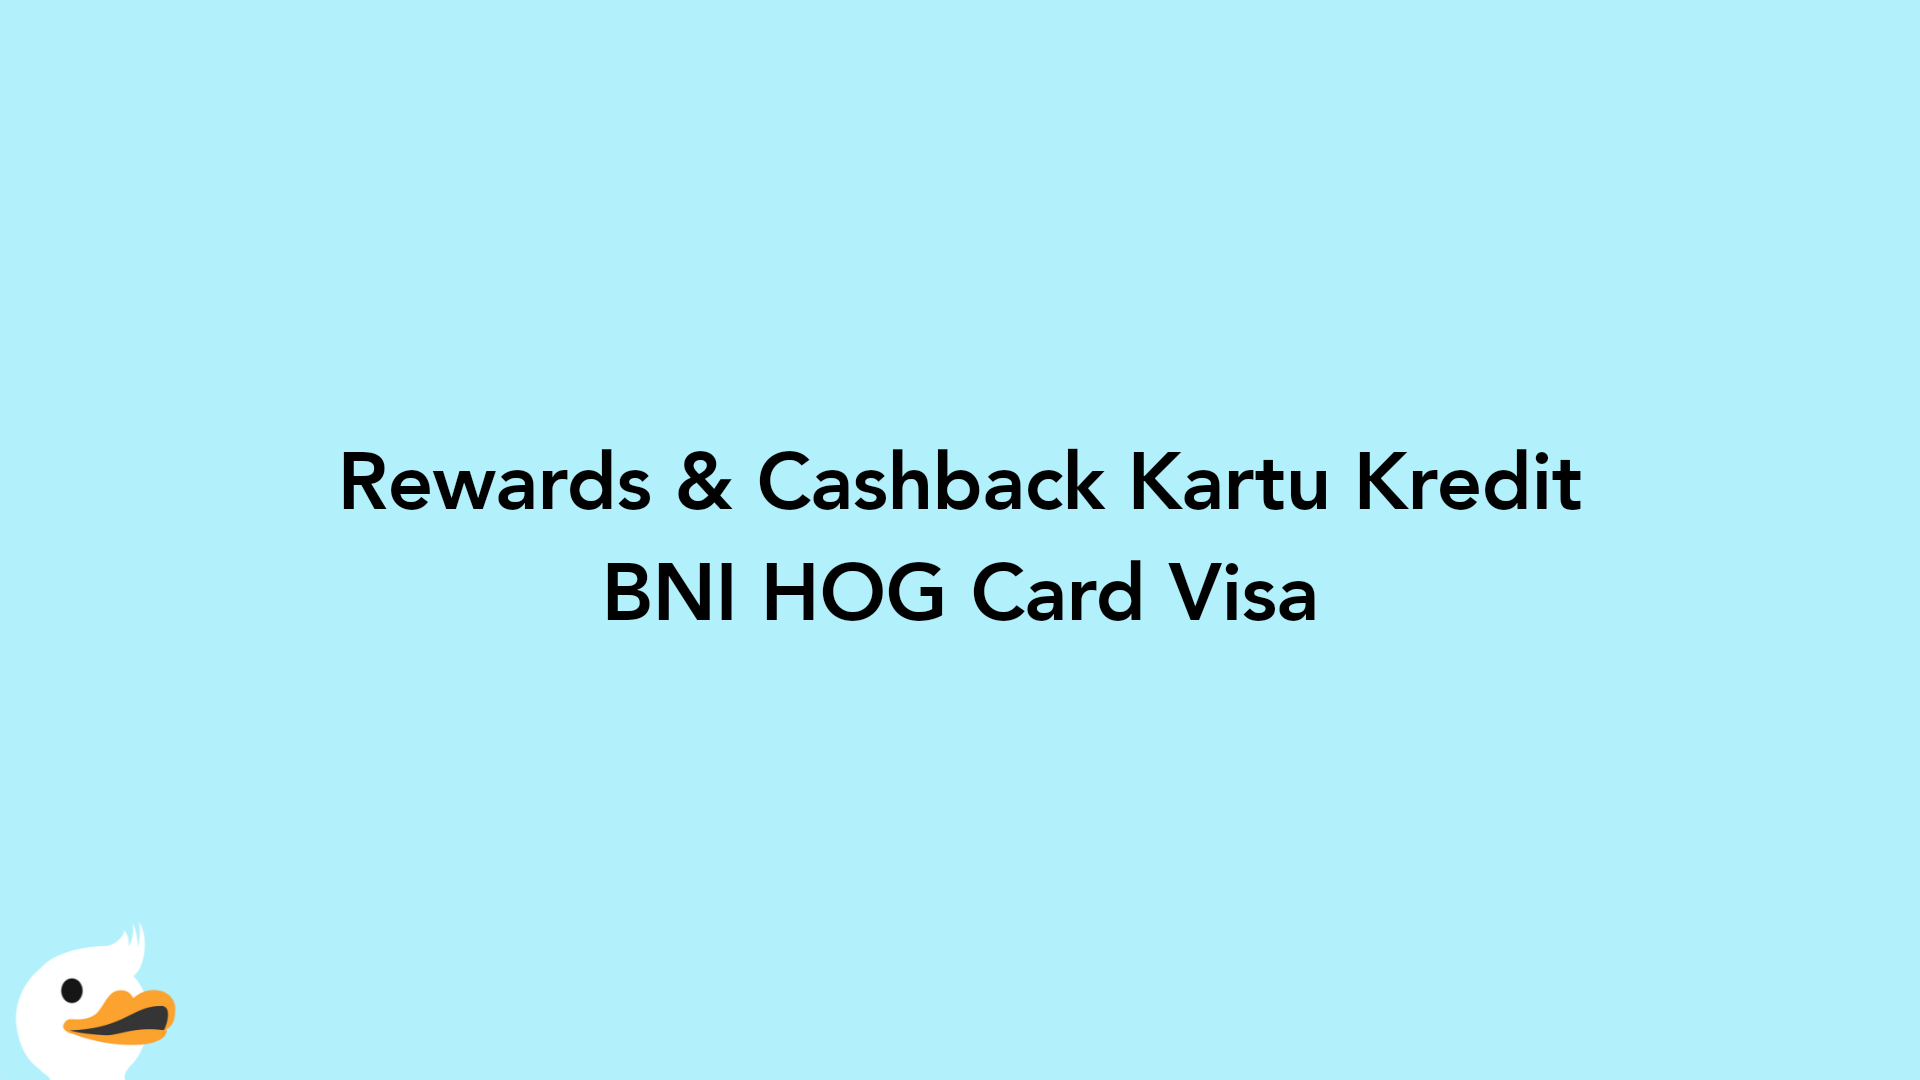 Rewards & Cashback Kartu Kredit BNI HOG Card Visa